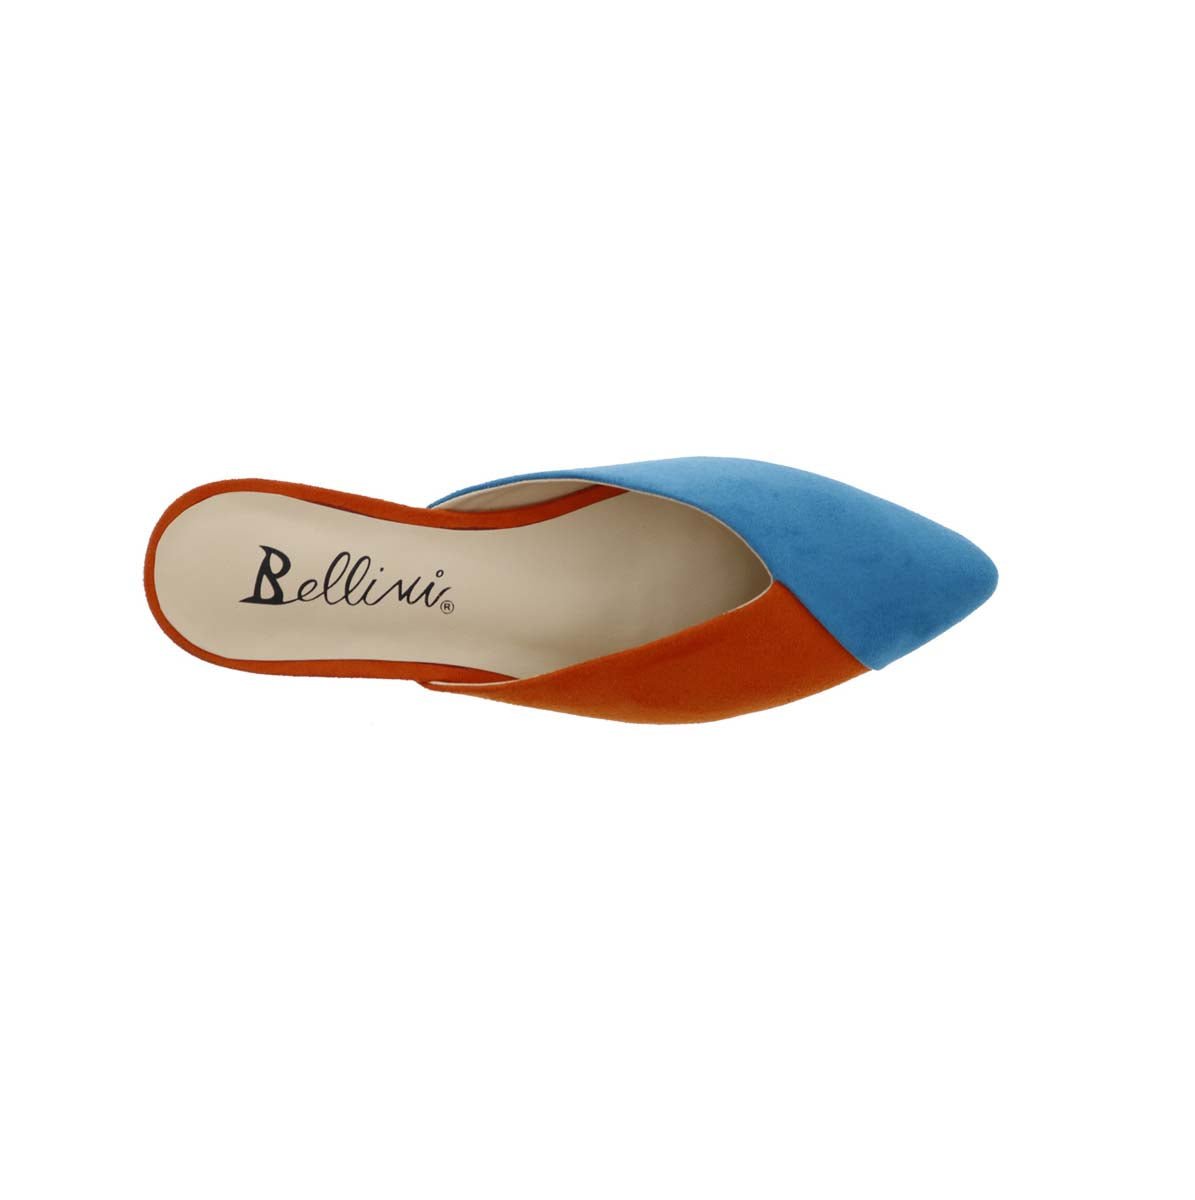 BELLINI FLEX WOMEN IN TURQUOISE/ORANGE MICROSUEDE - TLW Shoes